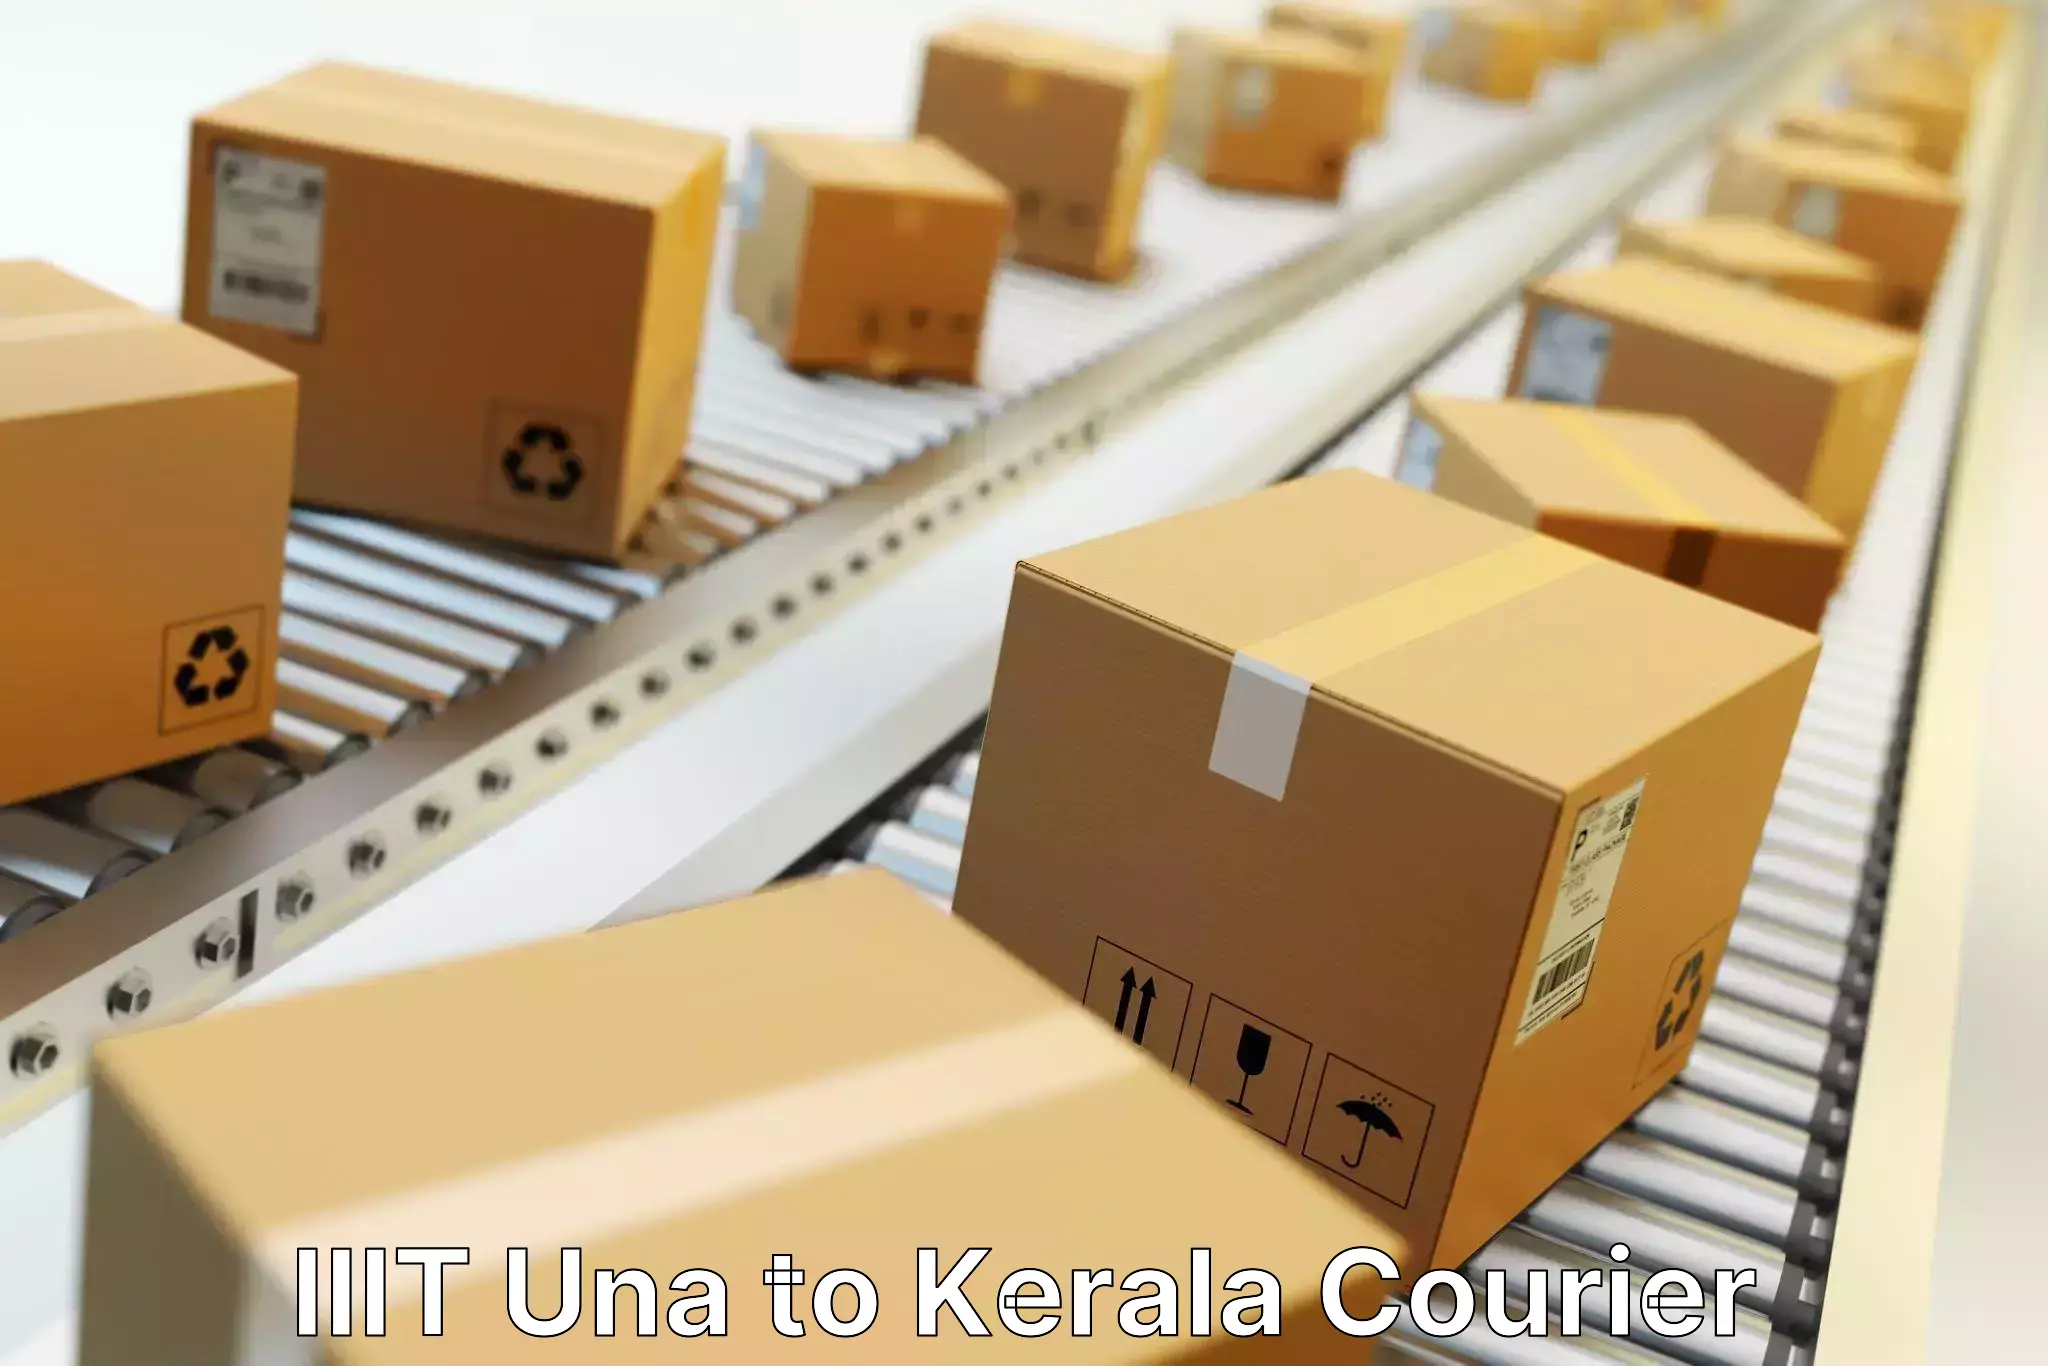 Customizable delivery plans IIIT Una to Koothattukulam